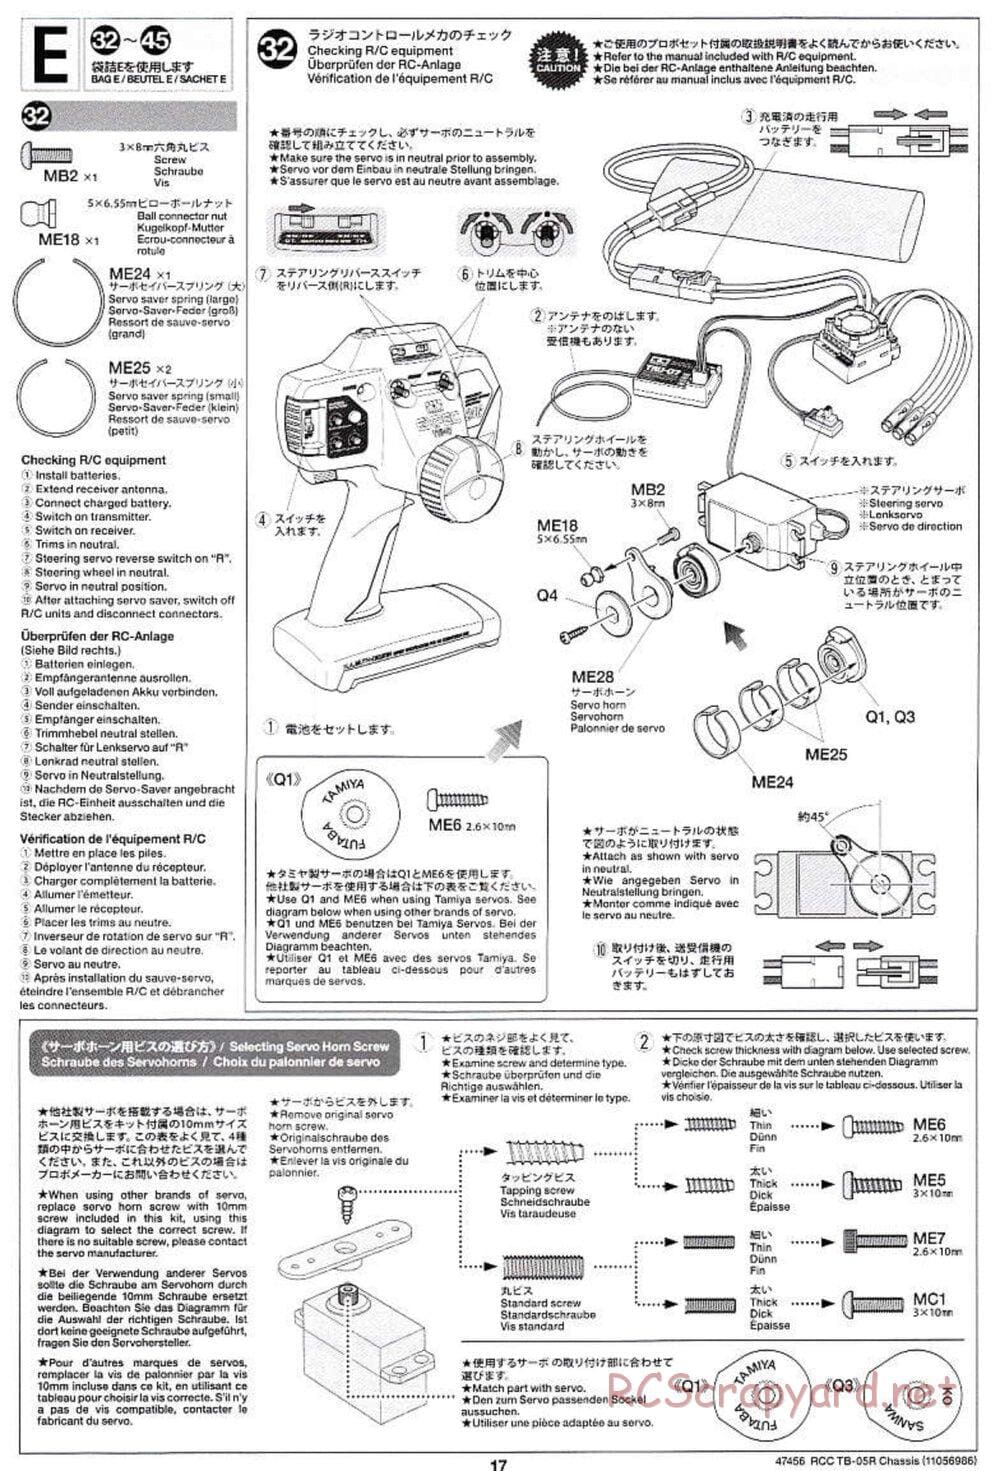 Tamiya - TB-05R Chassis - Manual - Page 17